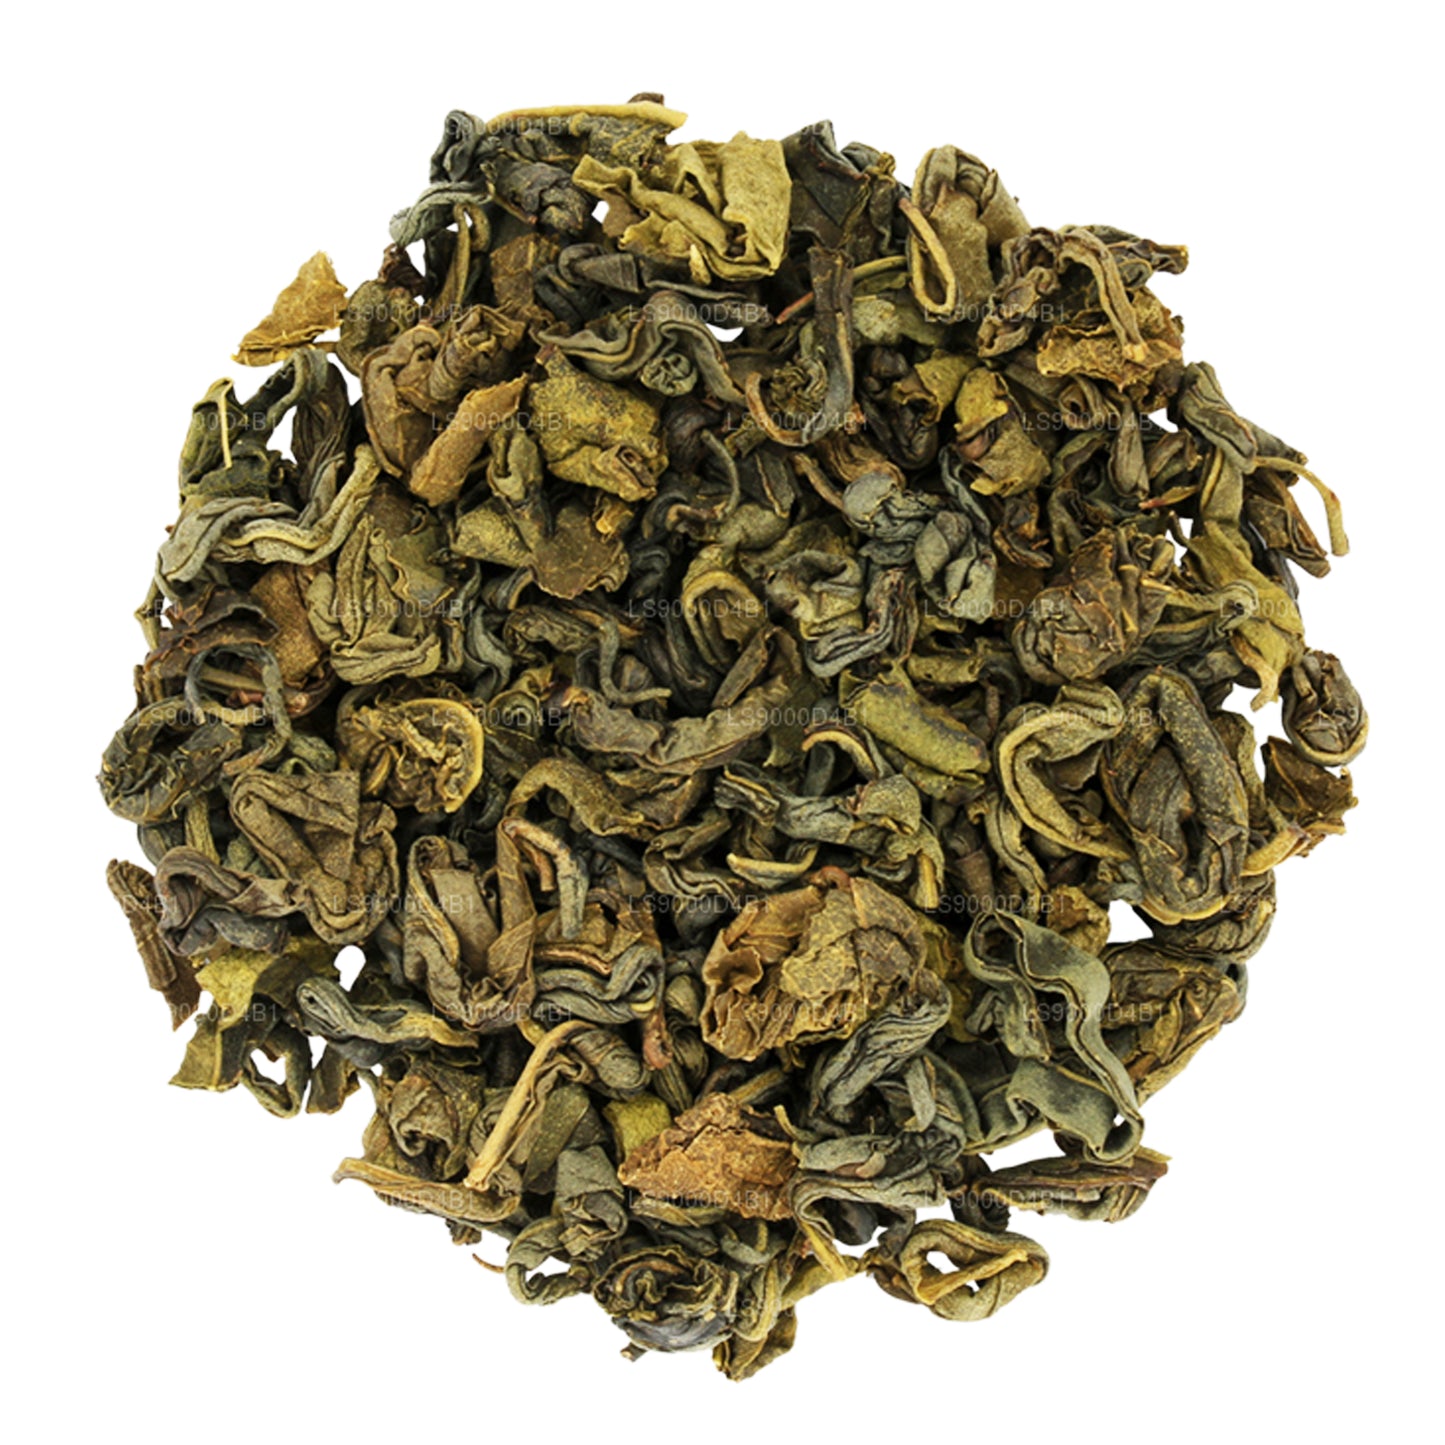 Boîte à thé « Green » de l'île de Basilur (100 g)